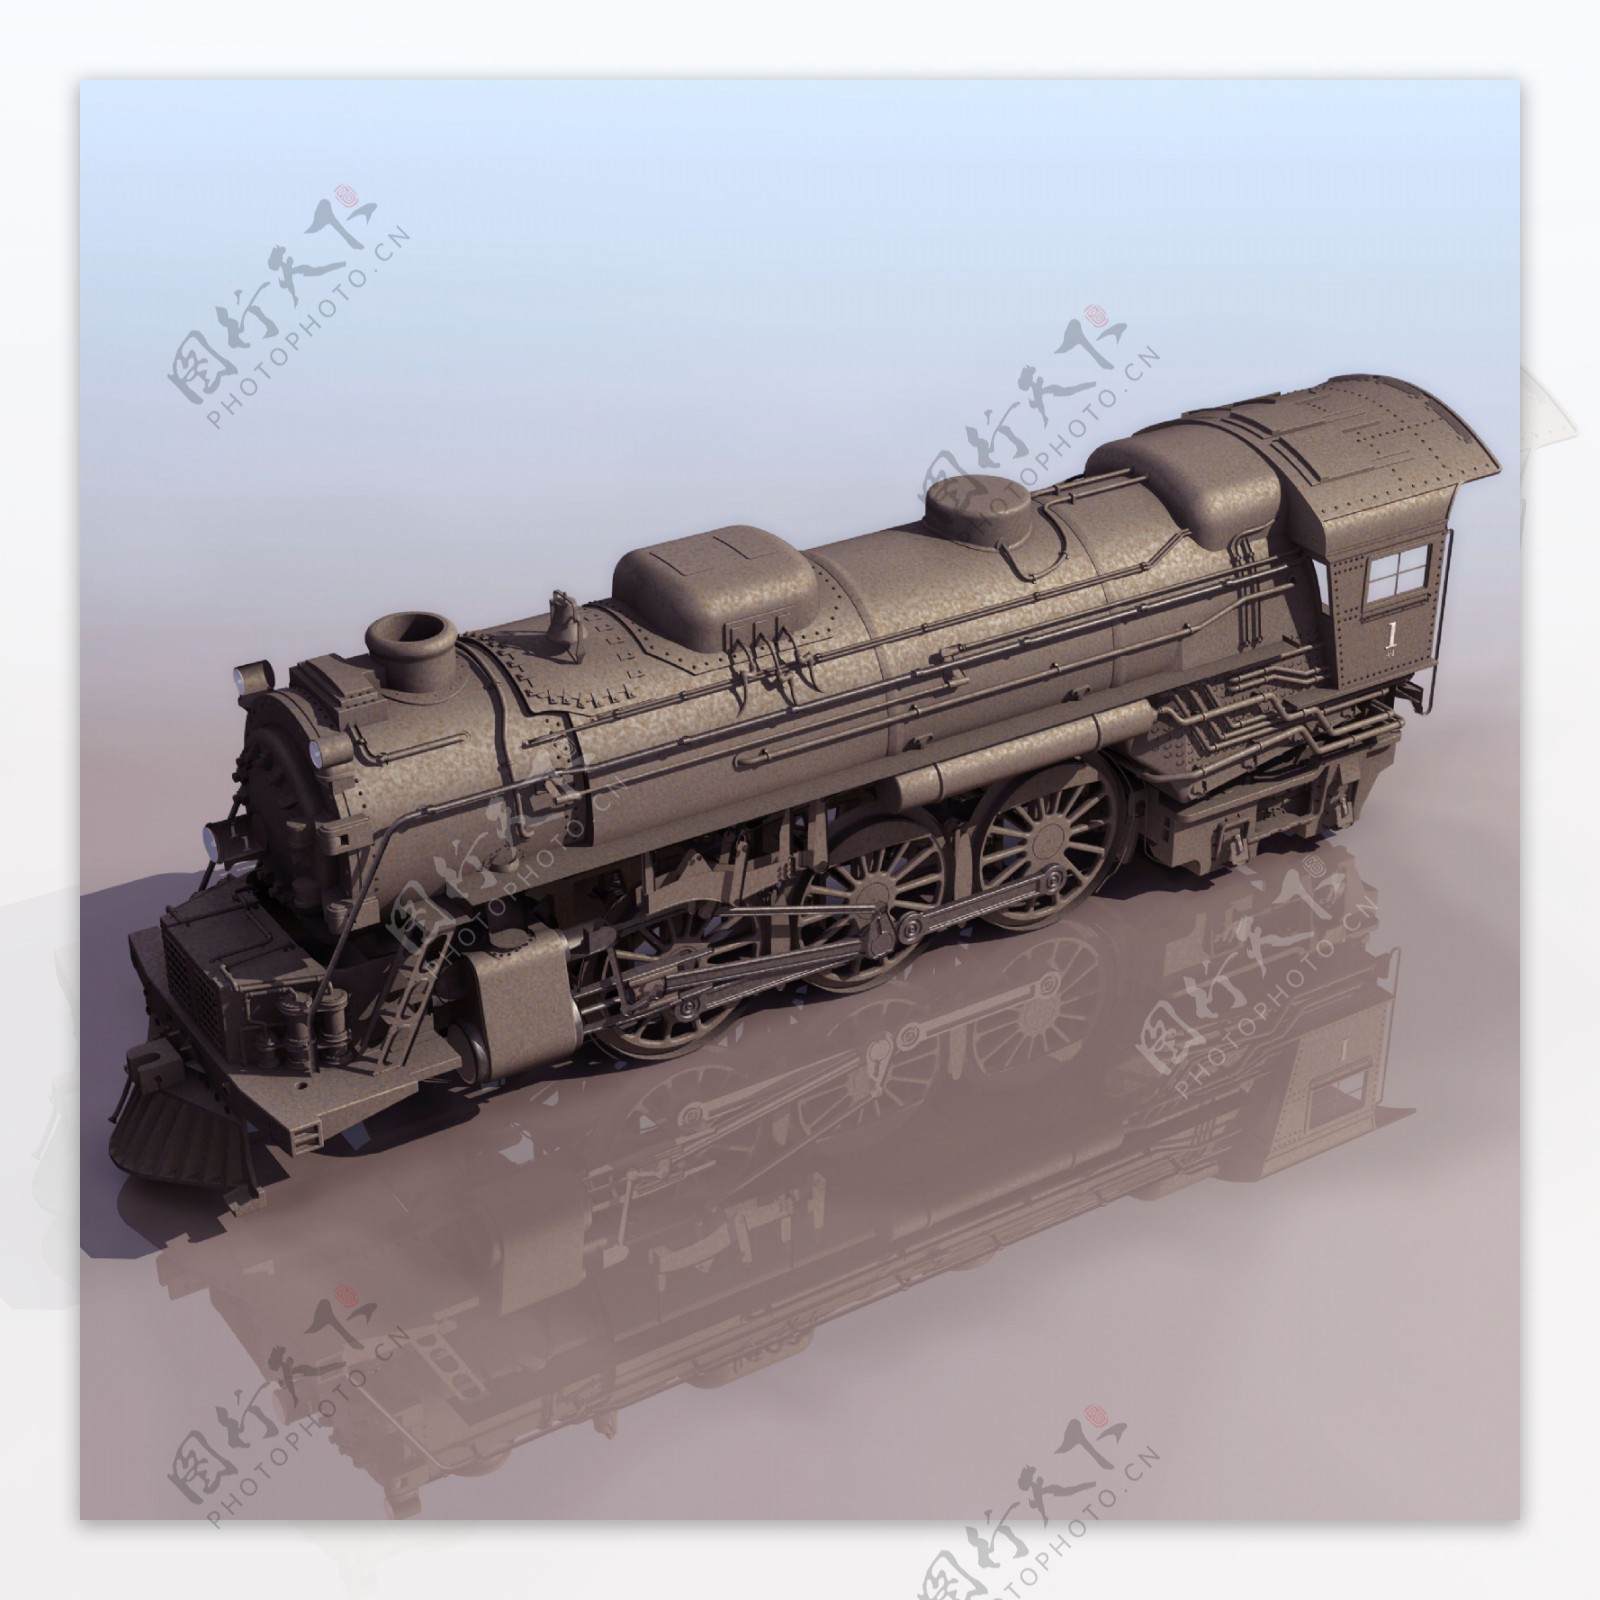 火车模型01